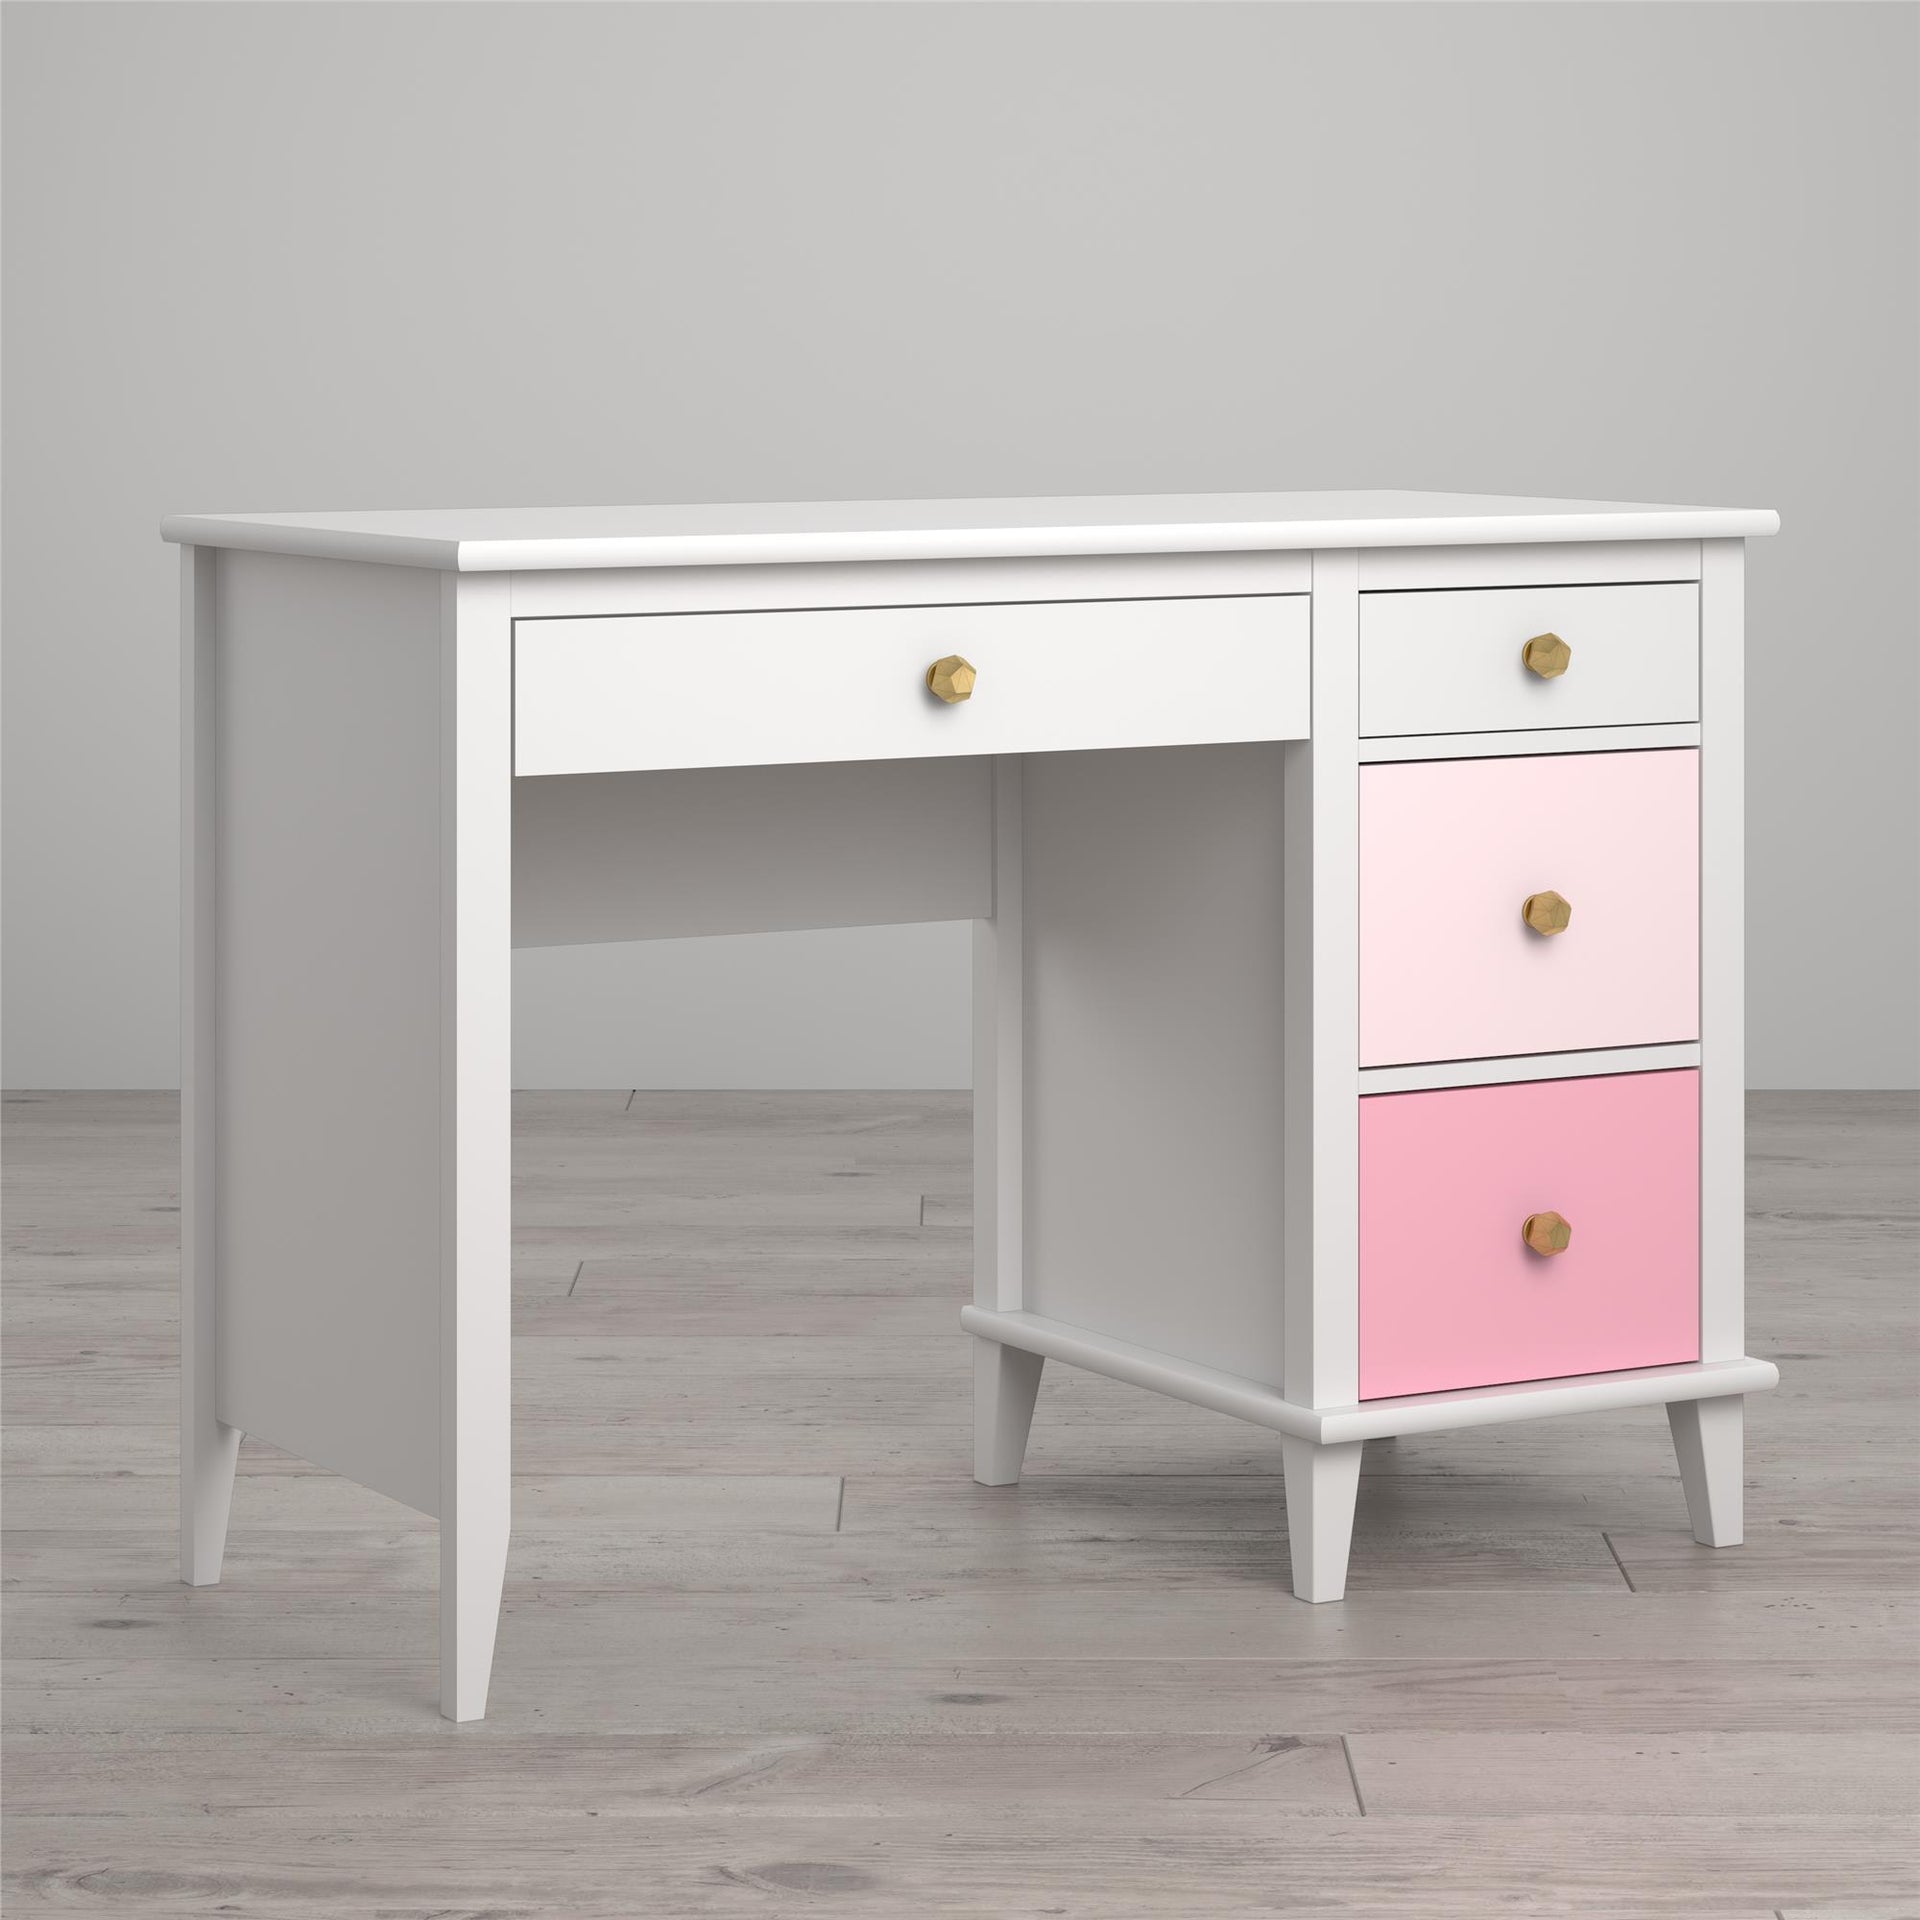 Monarch Hill Poppy Kids’ Desk - Pink